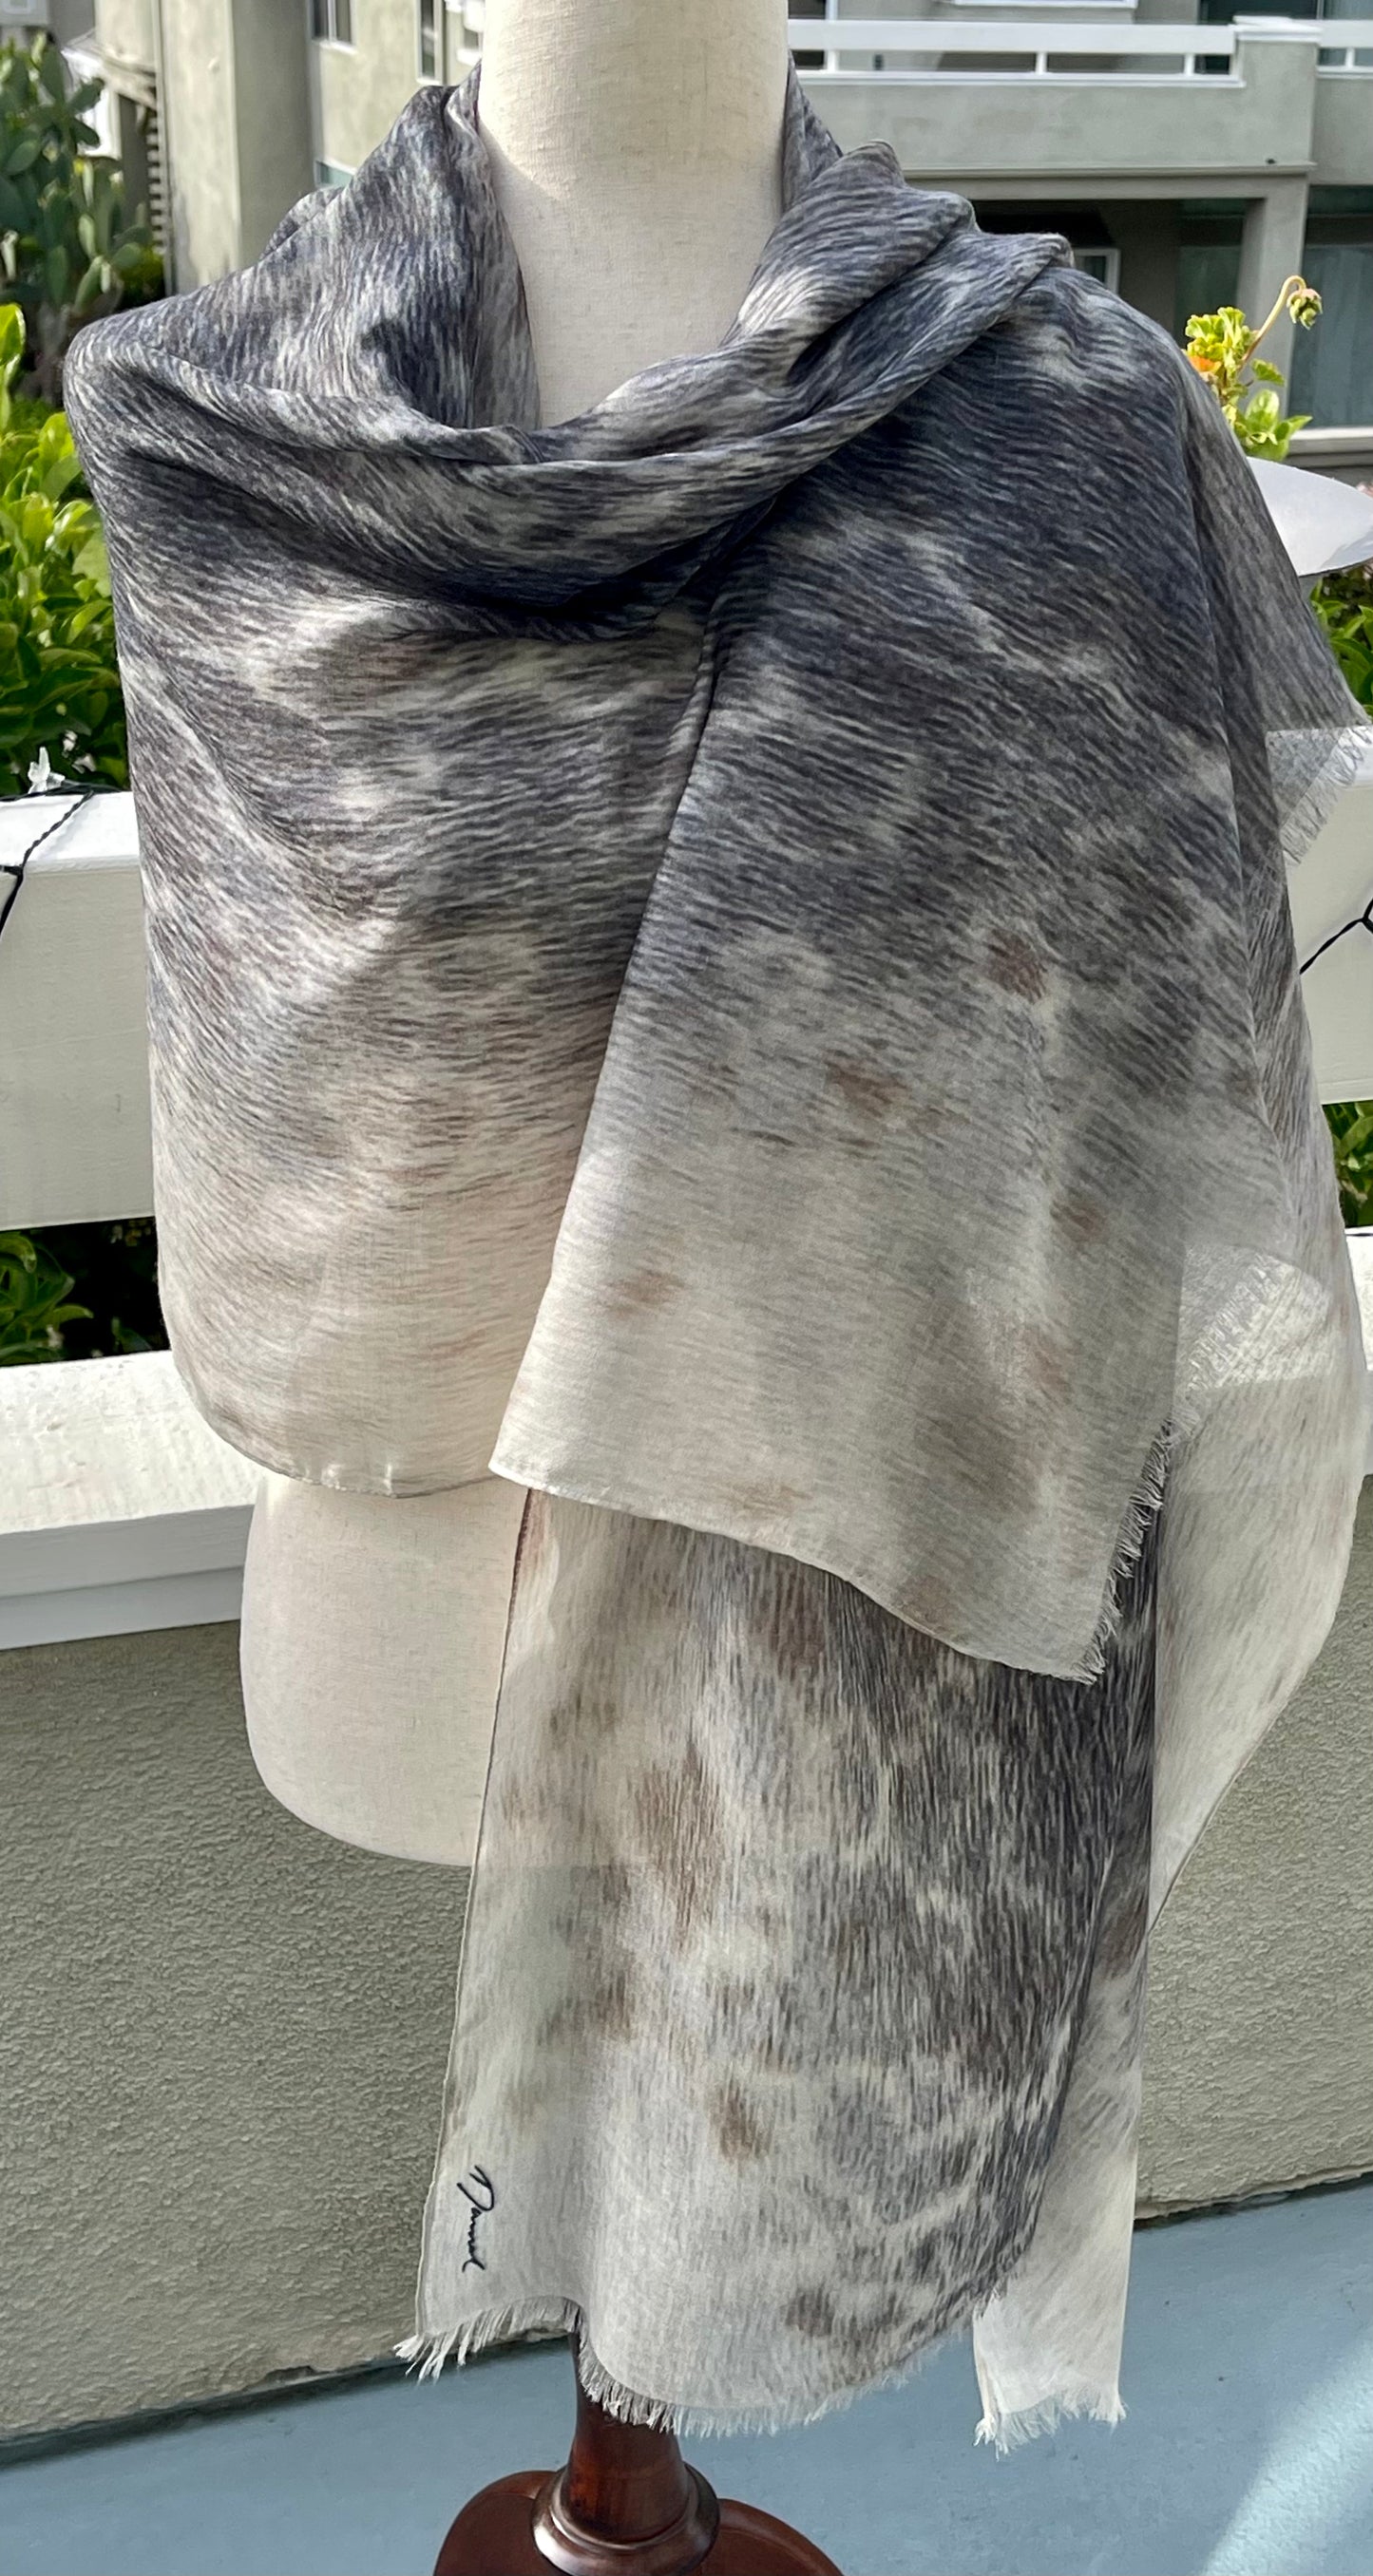 Modal Silk Designer Scarf Shawl Wrap Inspired by Harbor Seal Fur